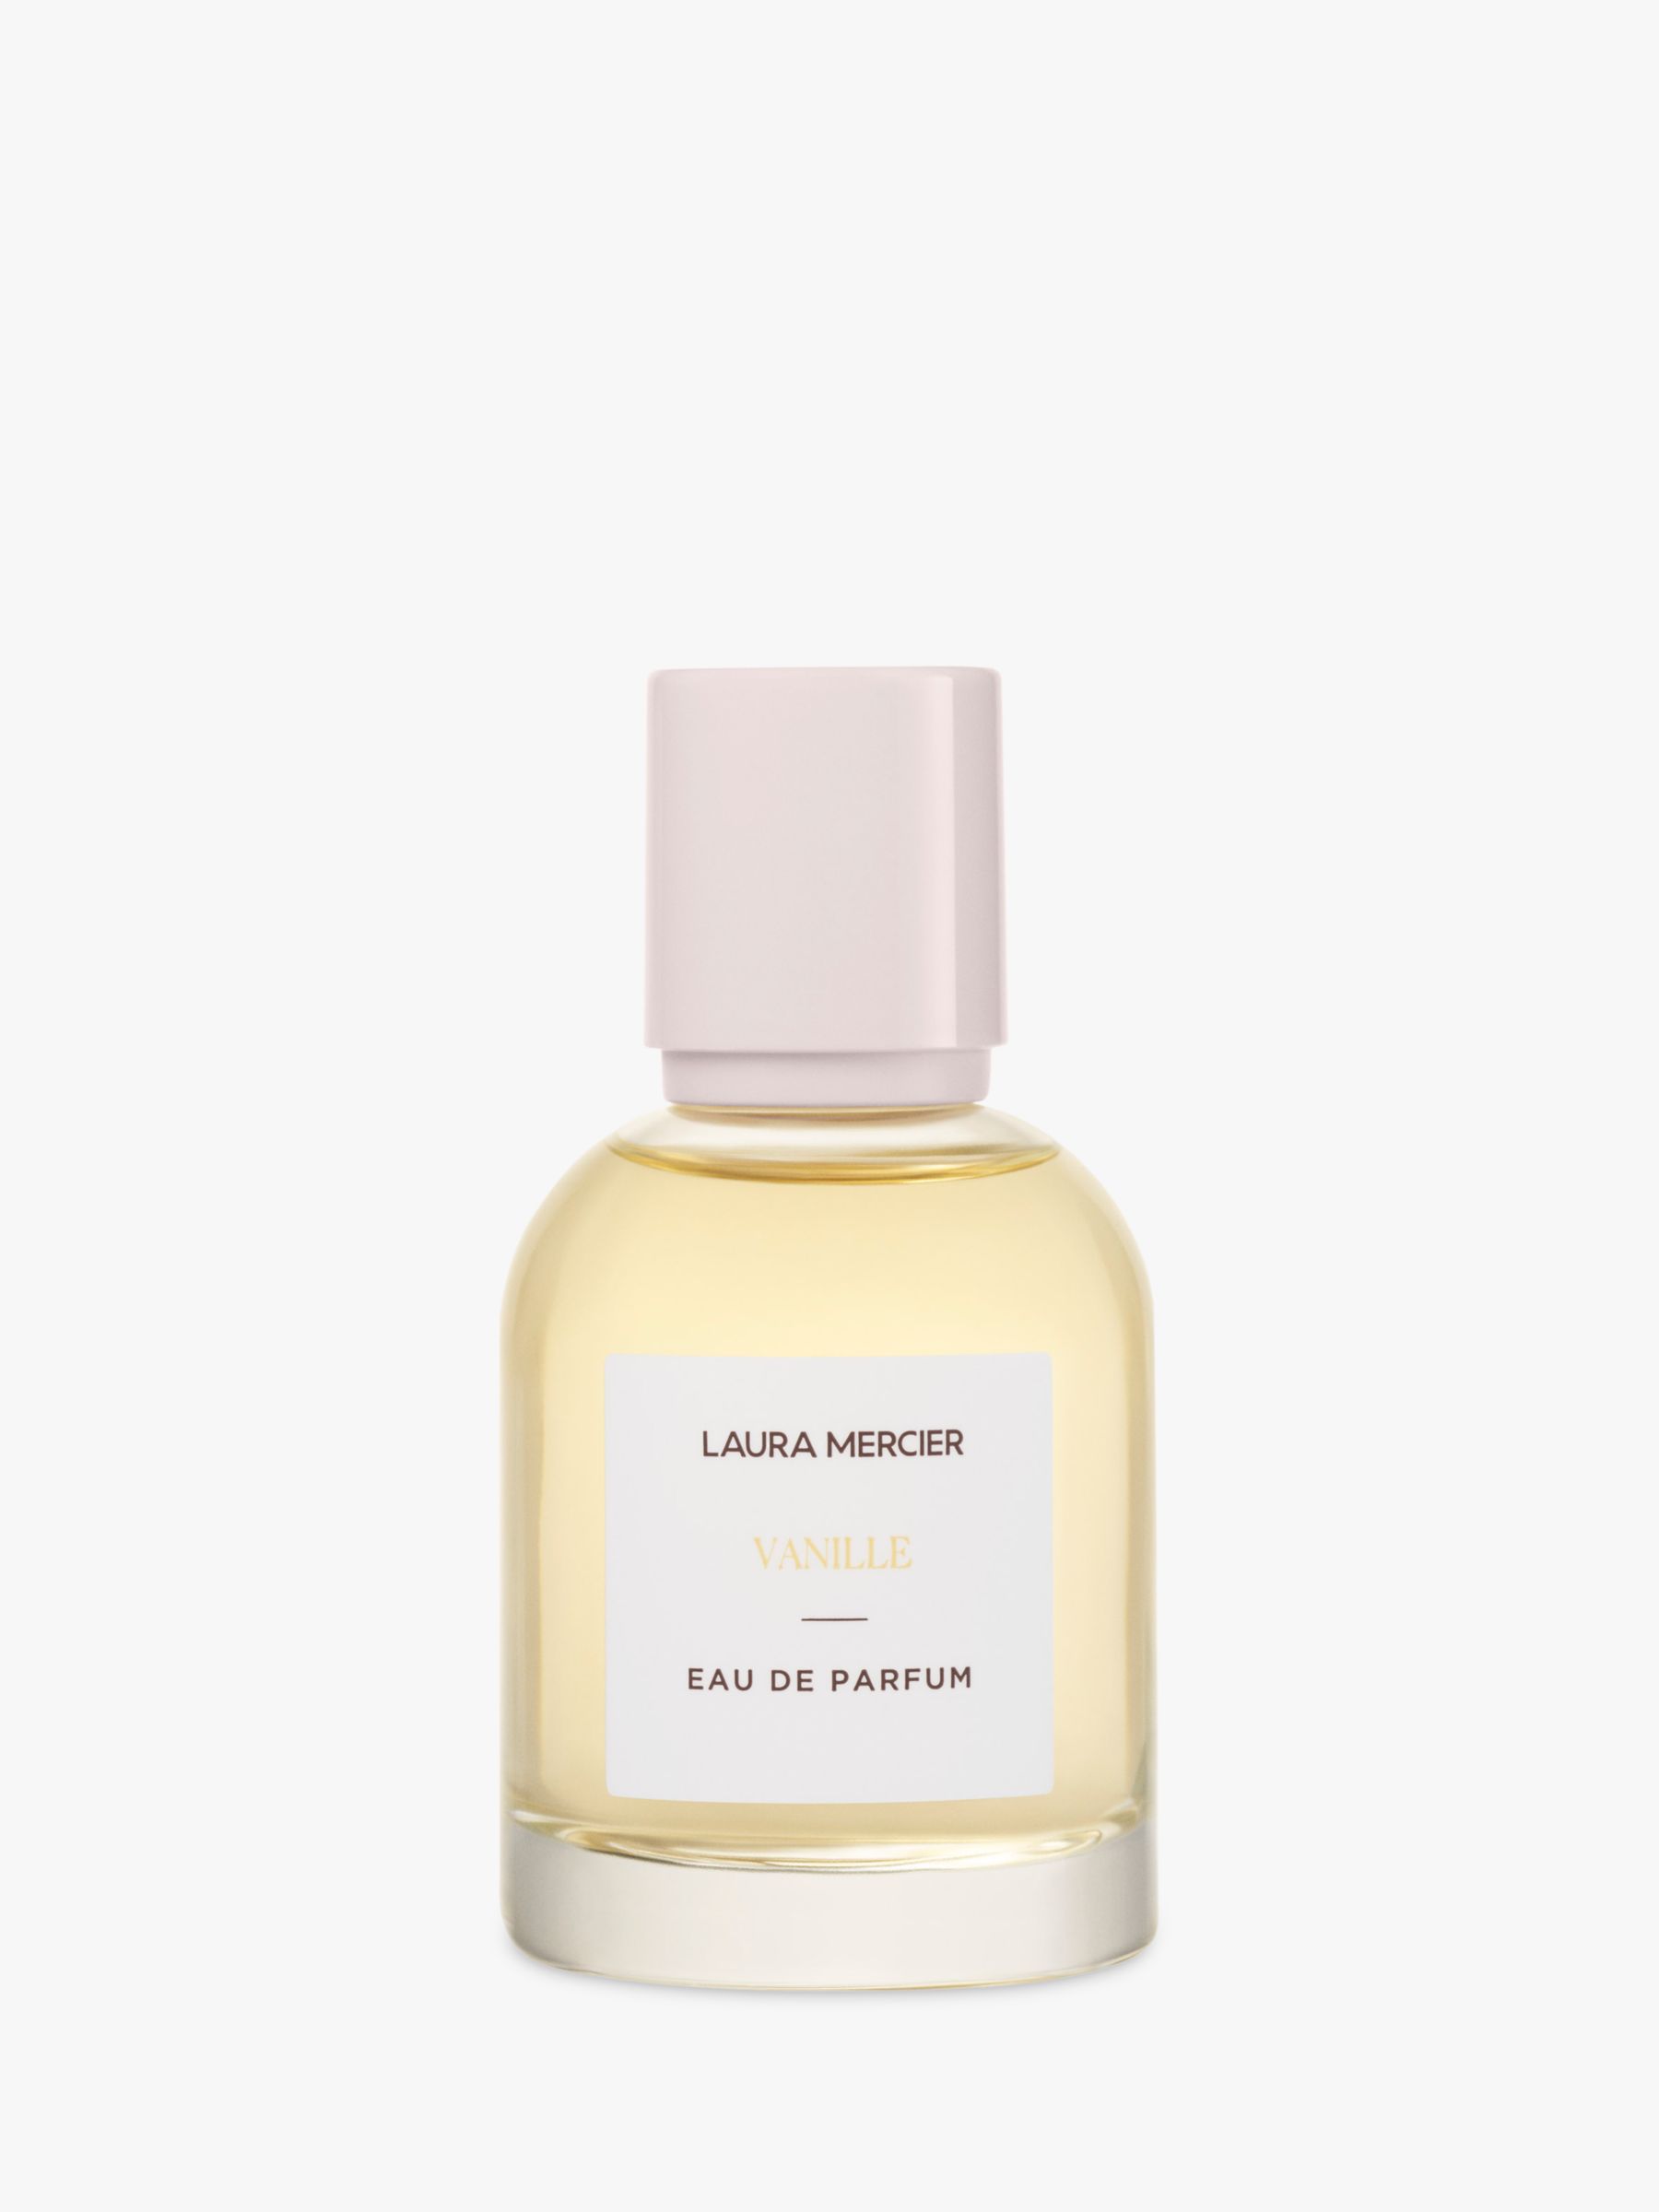 Laura Mercier Vanille Eau de Parfum, 50ml at John Lewis & Partners